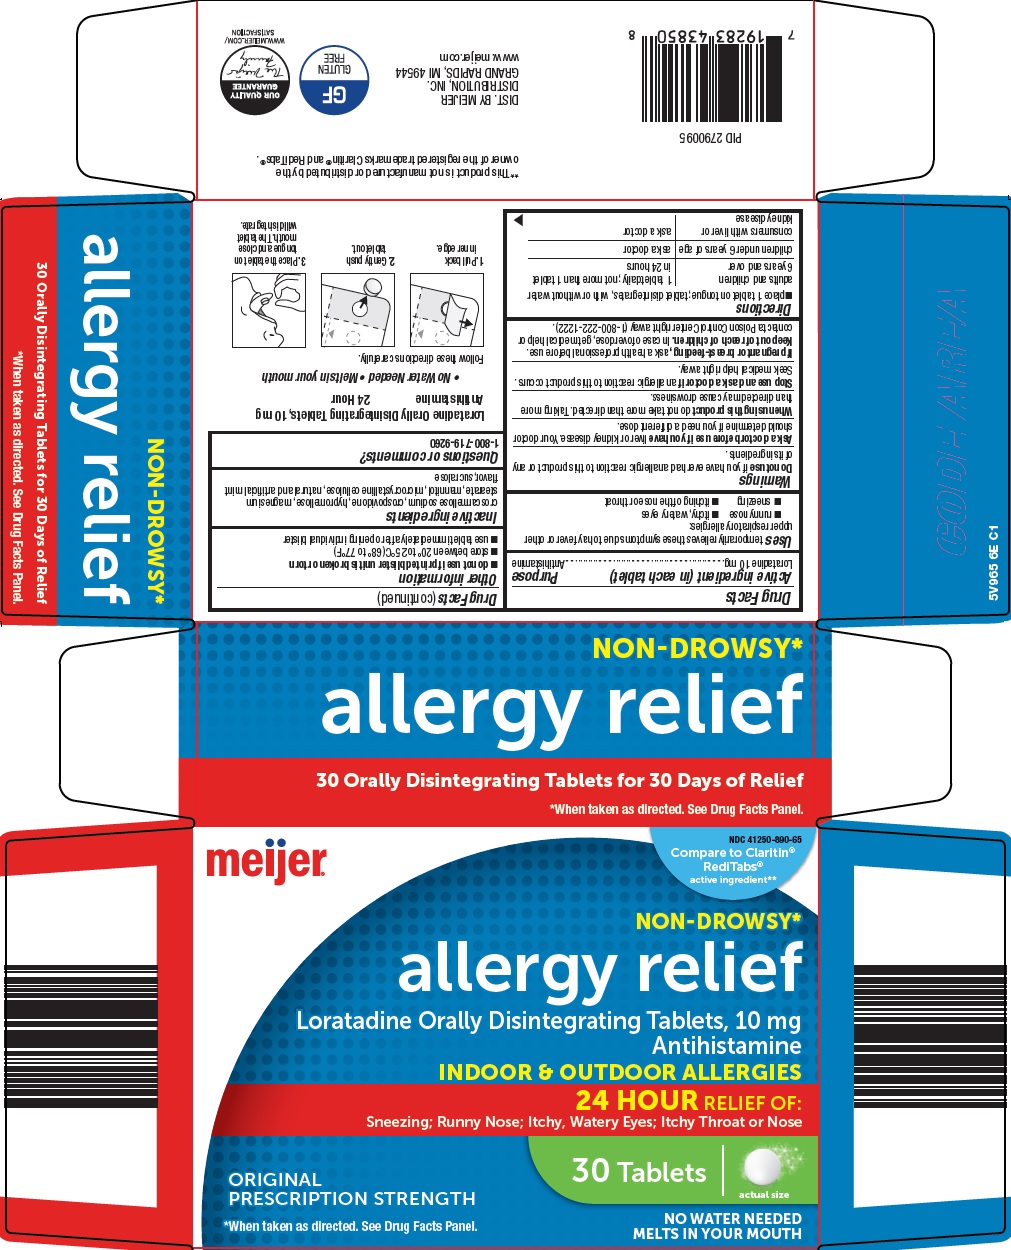 5v9-6e-allergy-relief